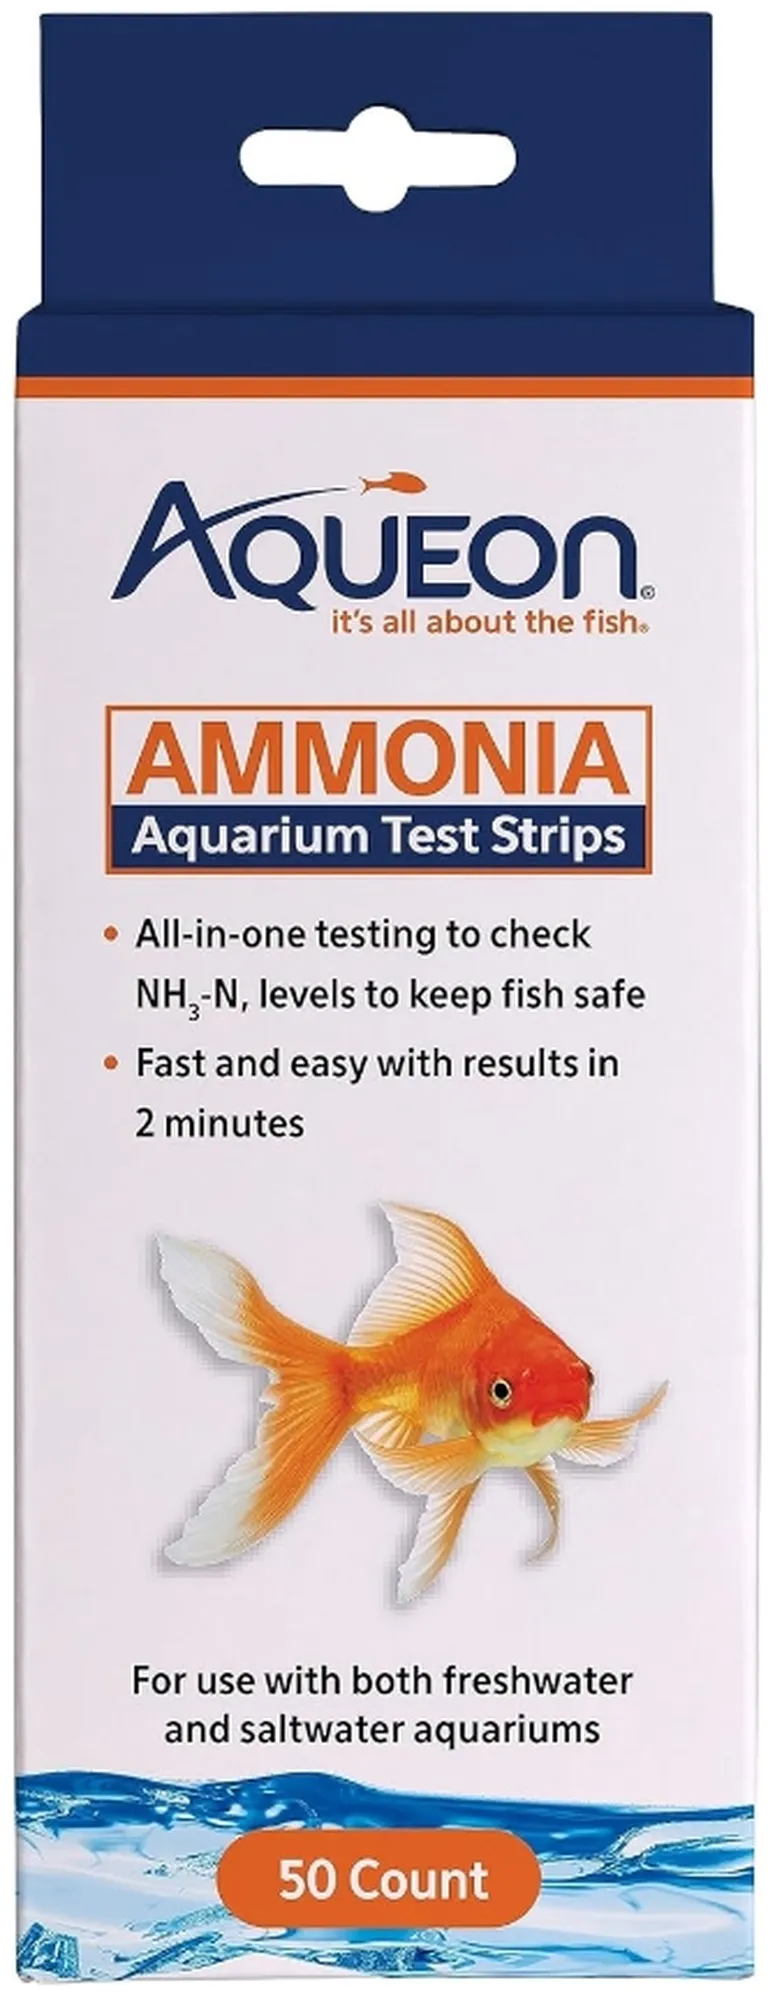 Aqueon Ammonia Aquarium Test Strips Photo 1